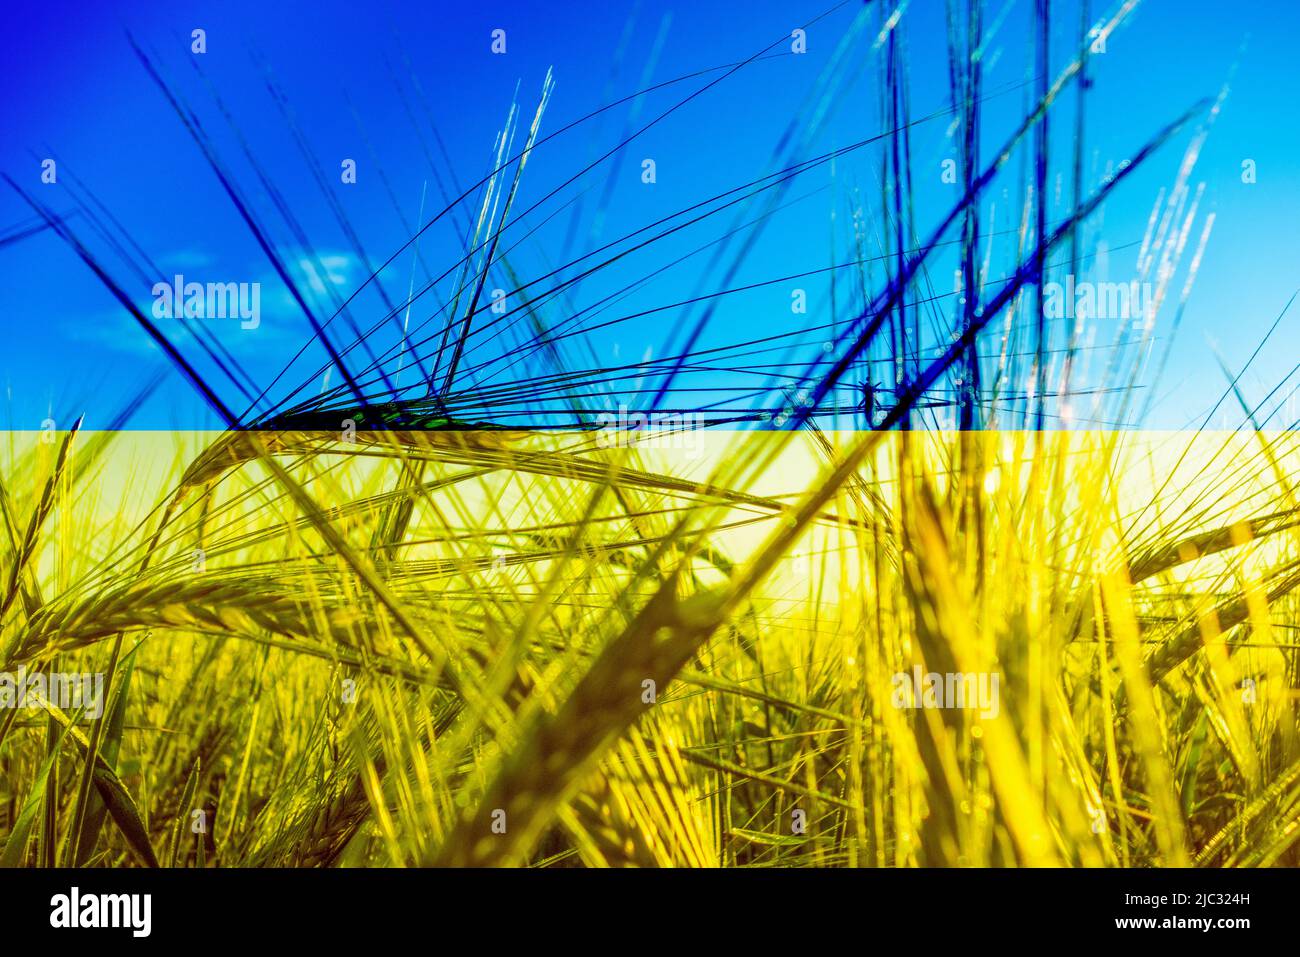 Flagge der Ukraine und Weizenfeld Composite. Konzeptbild: Ukraine Russland-Konflikt, Krieg, Weizen, Weltnahrungsmangel, russische Sanktionen... Stockfoto